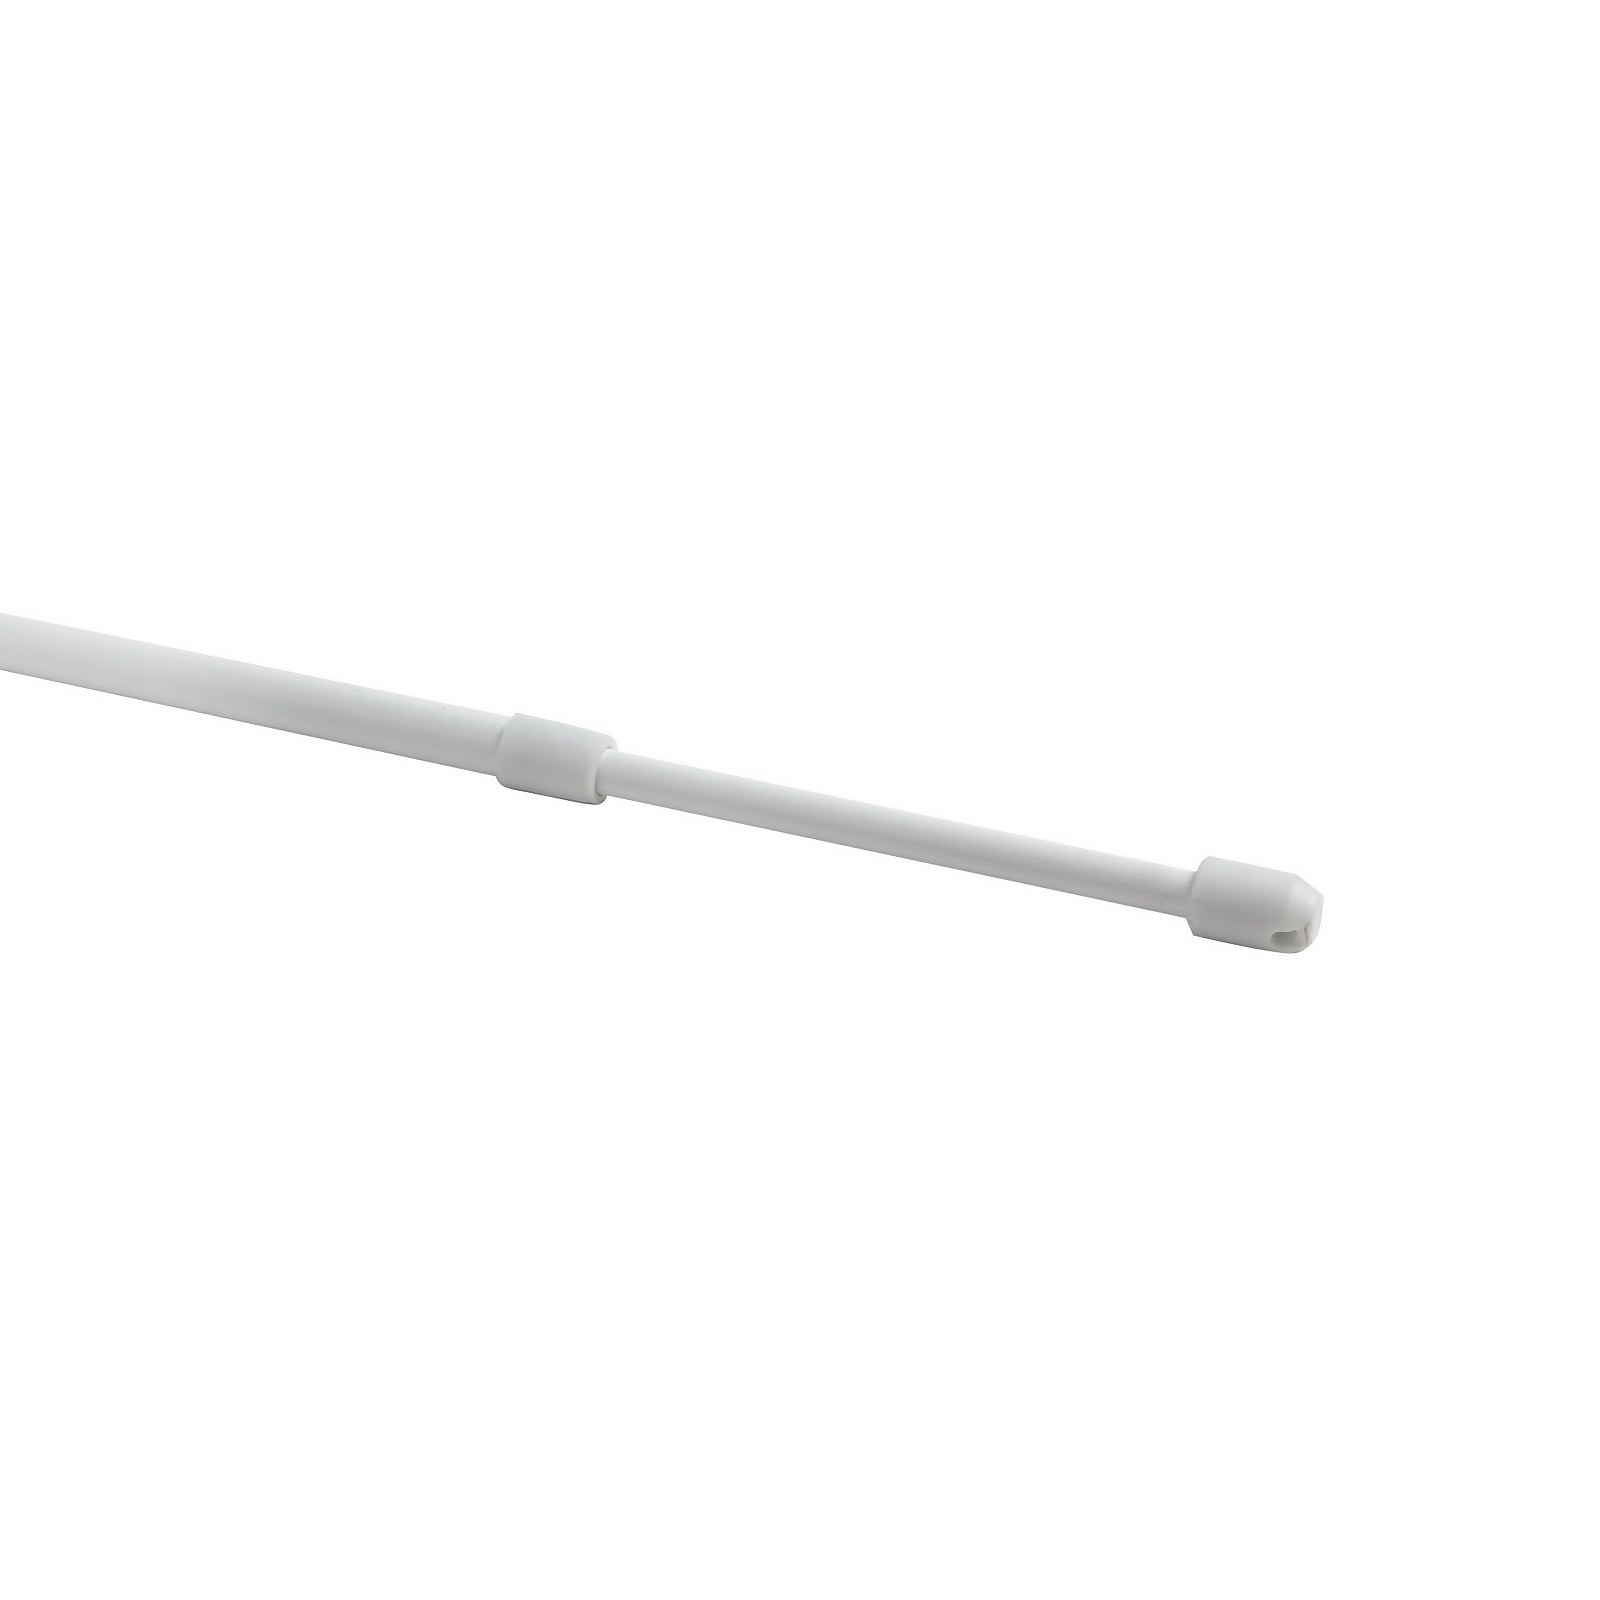 Lightweight Metal Extendable Net Curtain Rod - 100-150cm - White